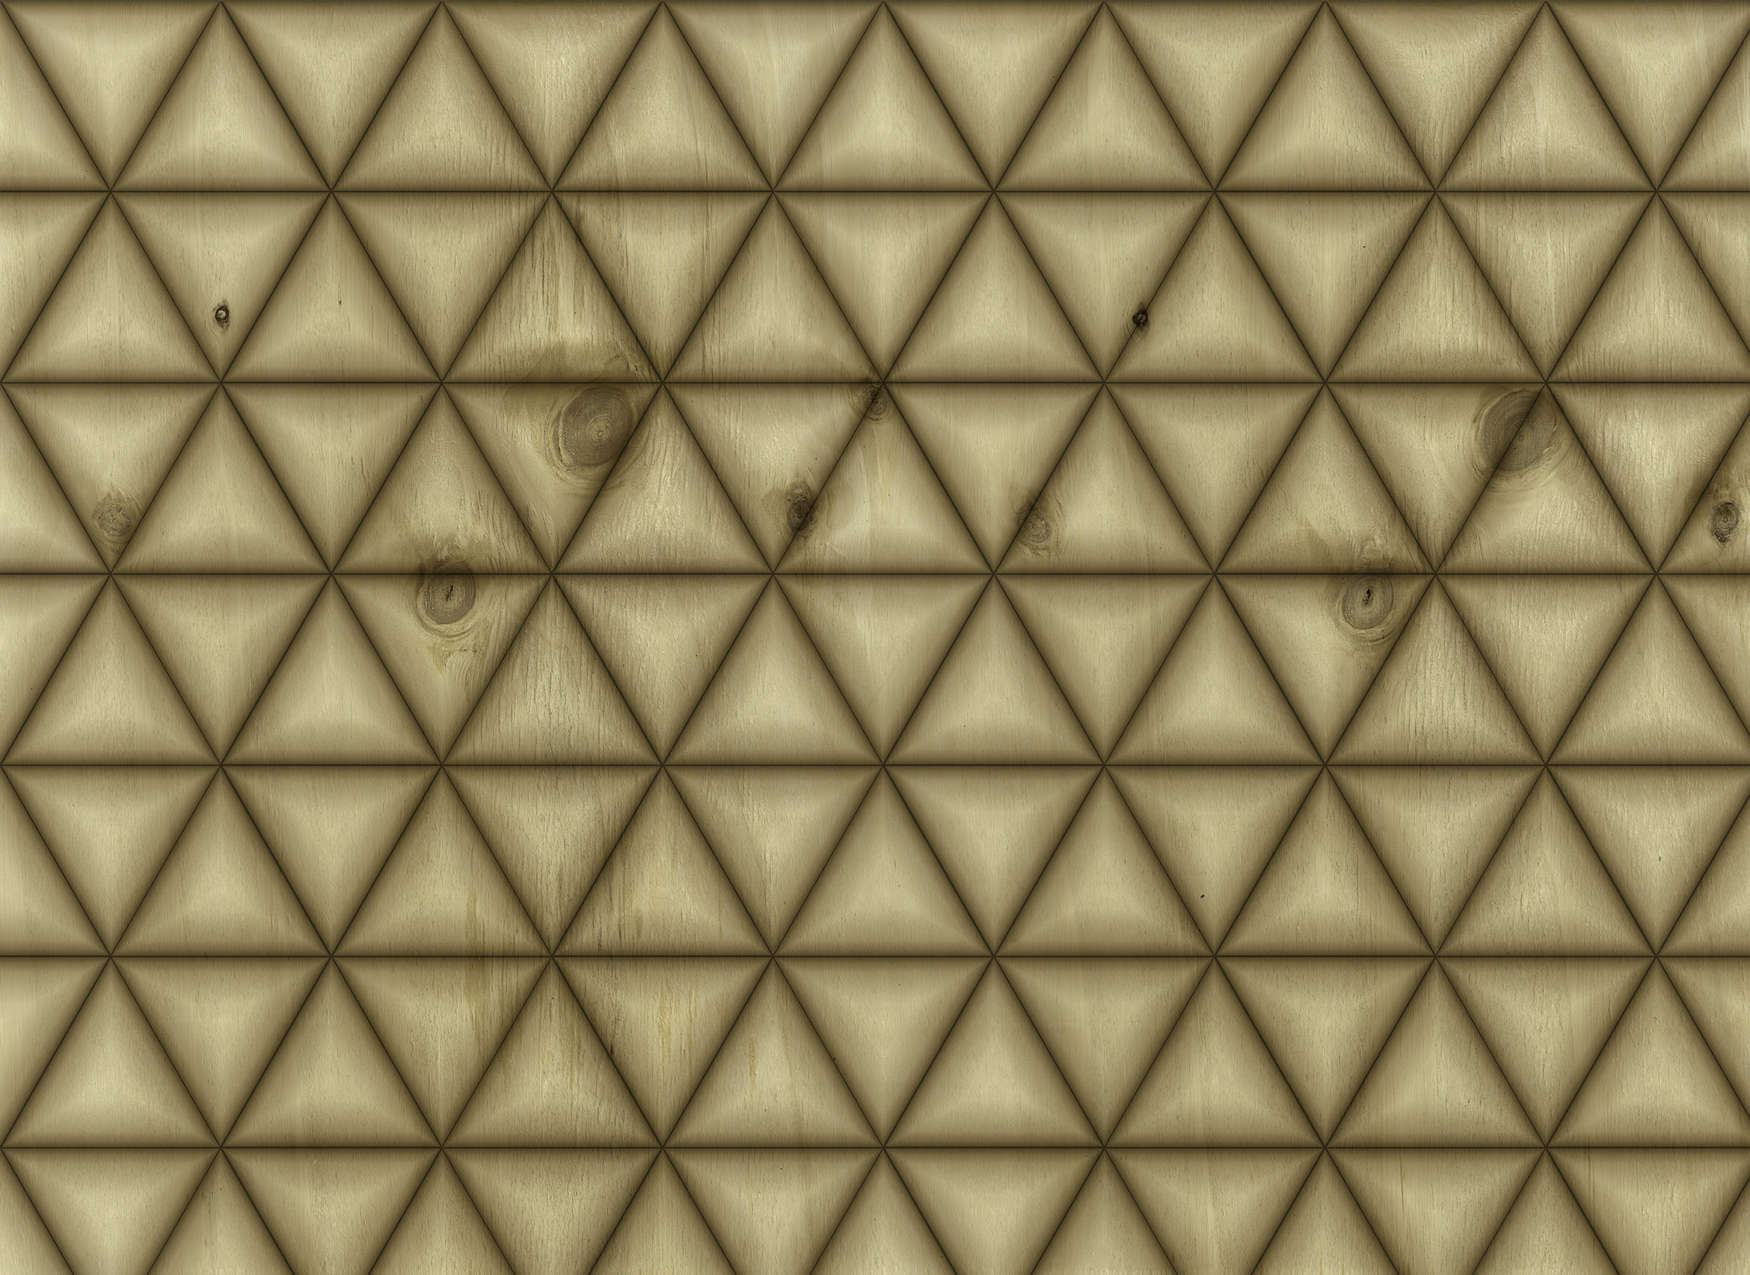             Mural de pared con diseño geométrico de triángulos en aspecto de madera - Marrón, Beige
        